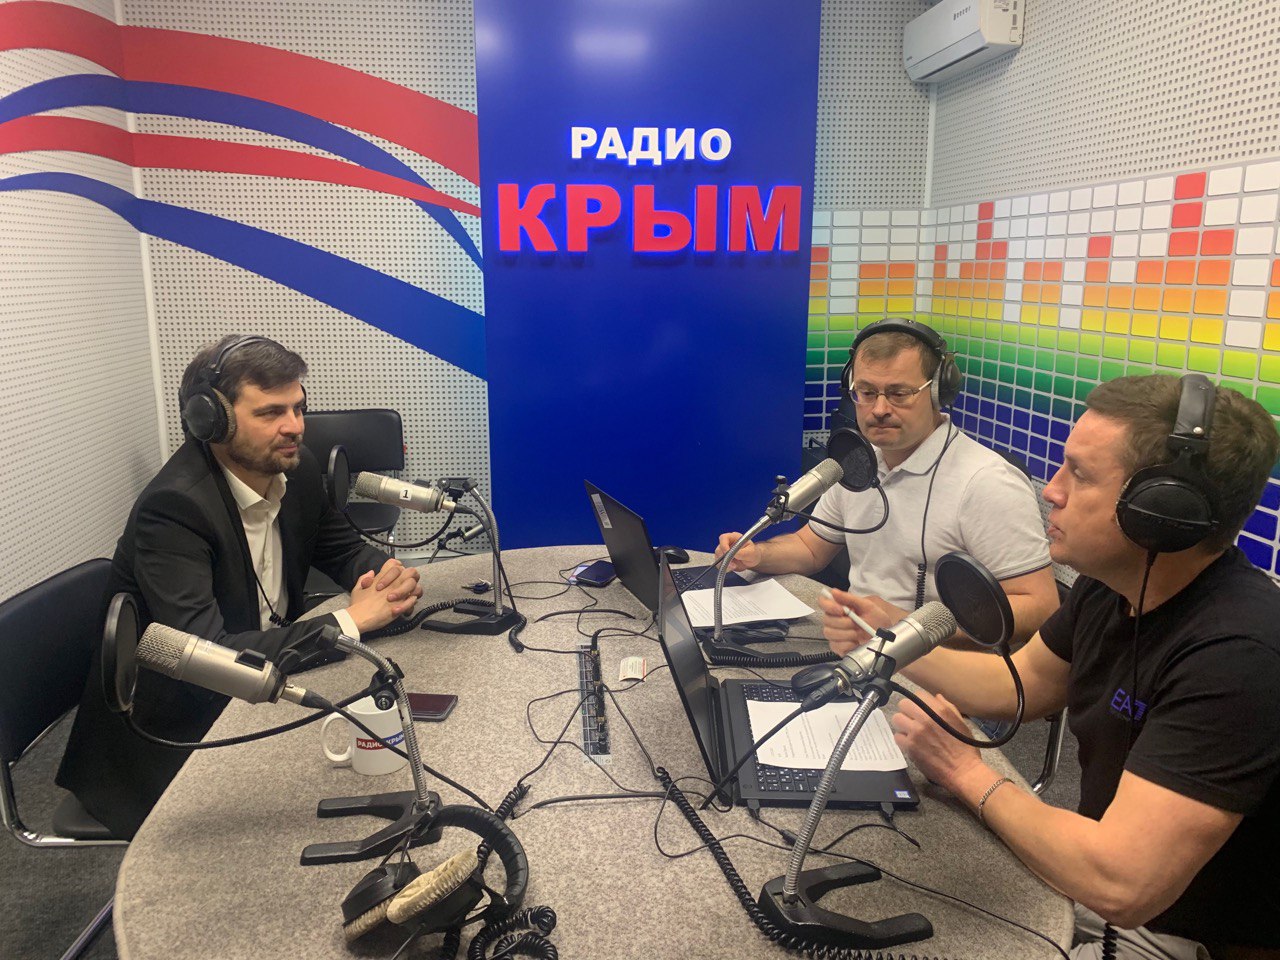 Радио турции. Радио Крым. Телевидение Крыма. Телекомпания Крым.